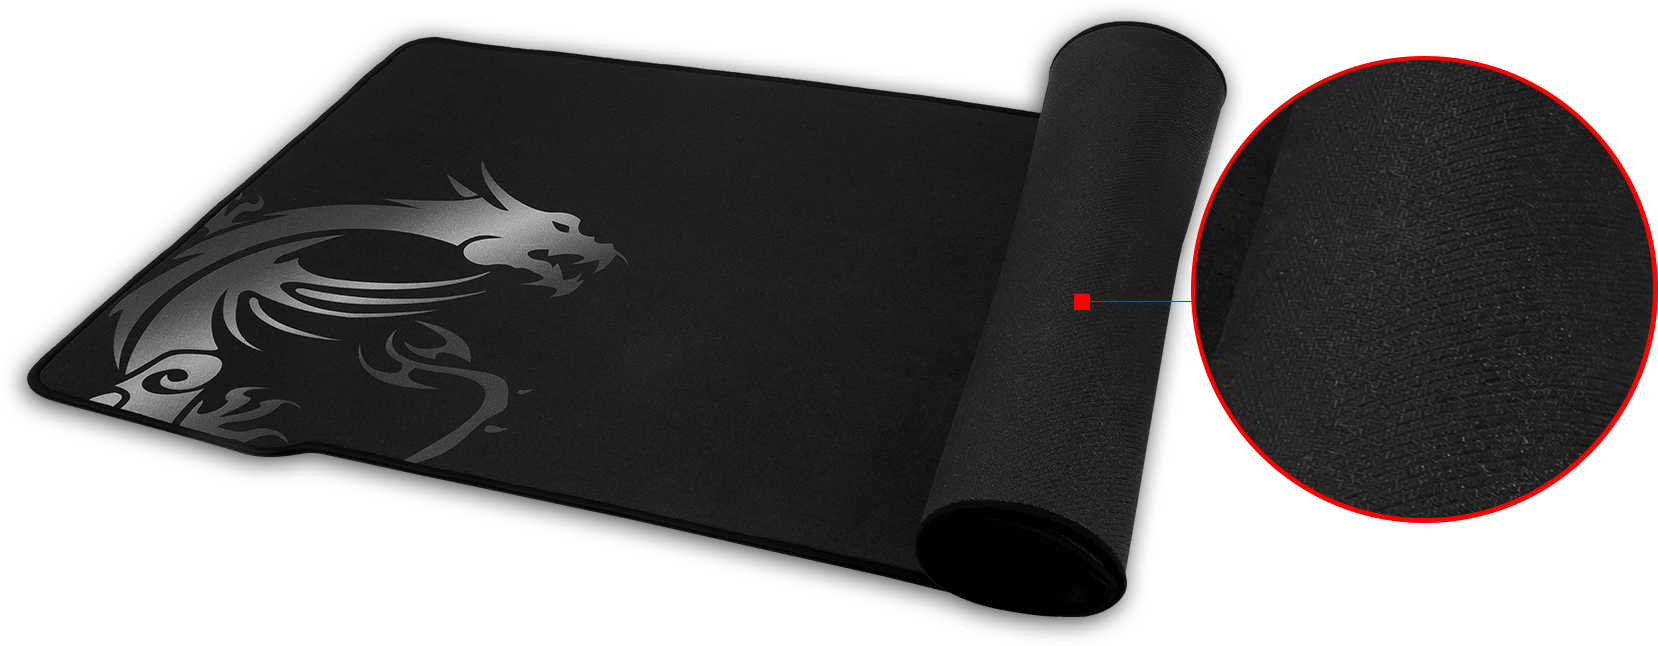 MSI Agility GD21 Tapis de souris de jeu Noir